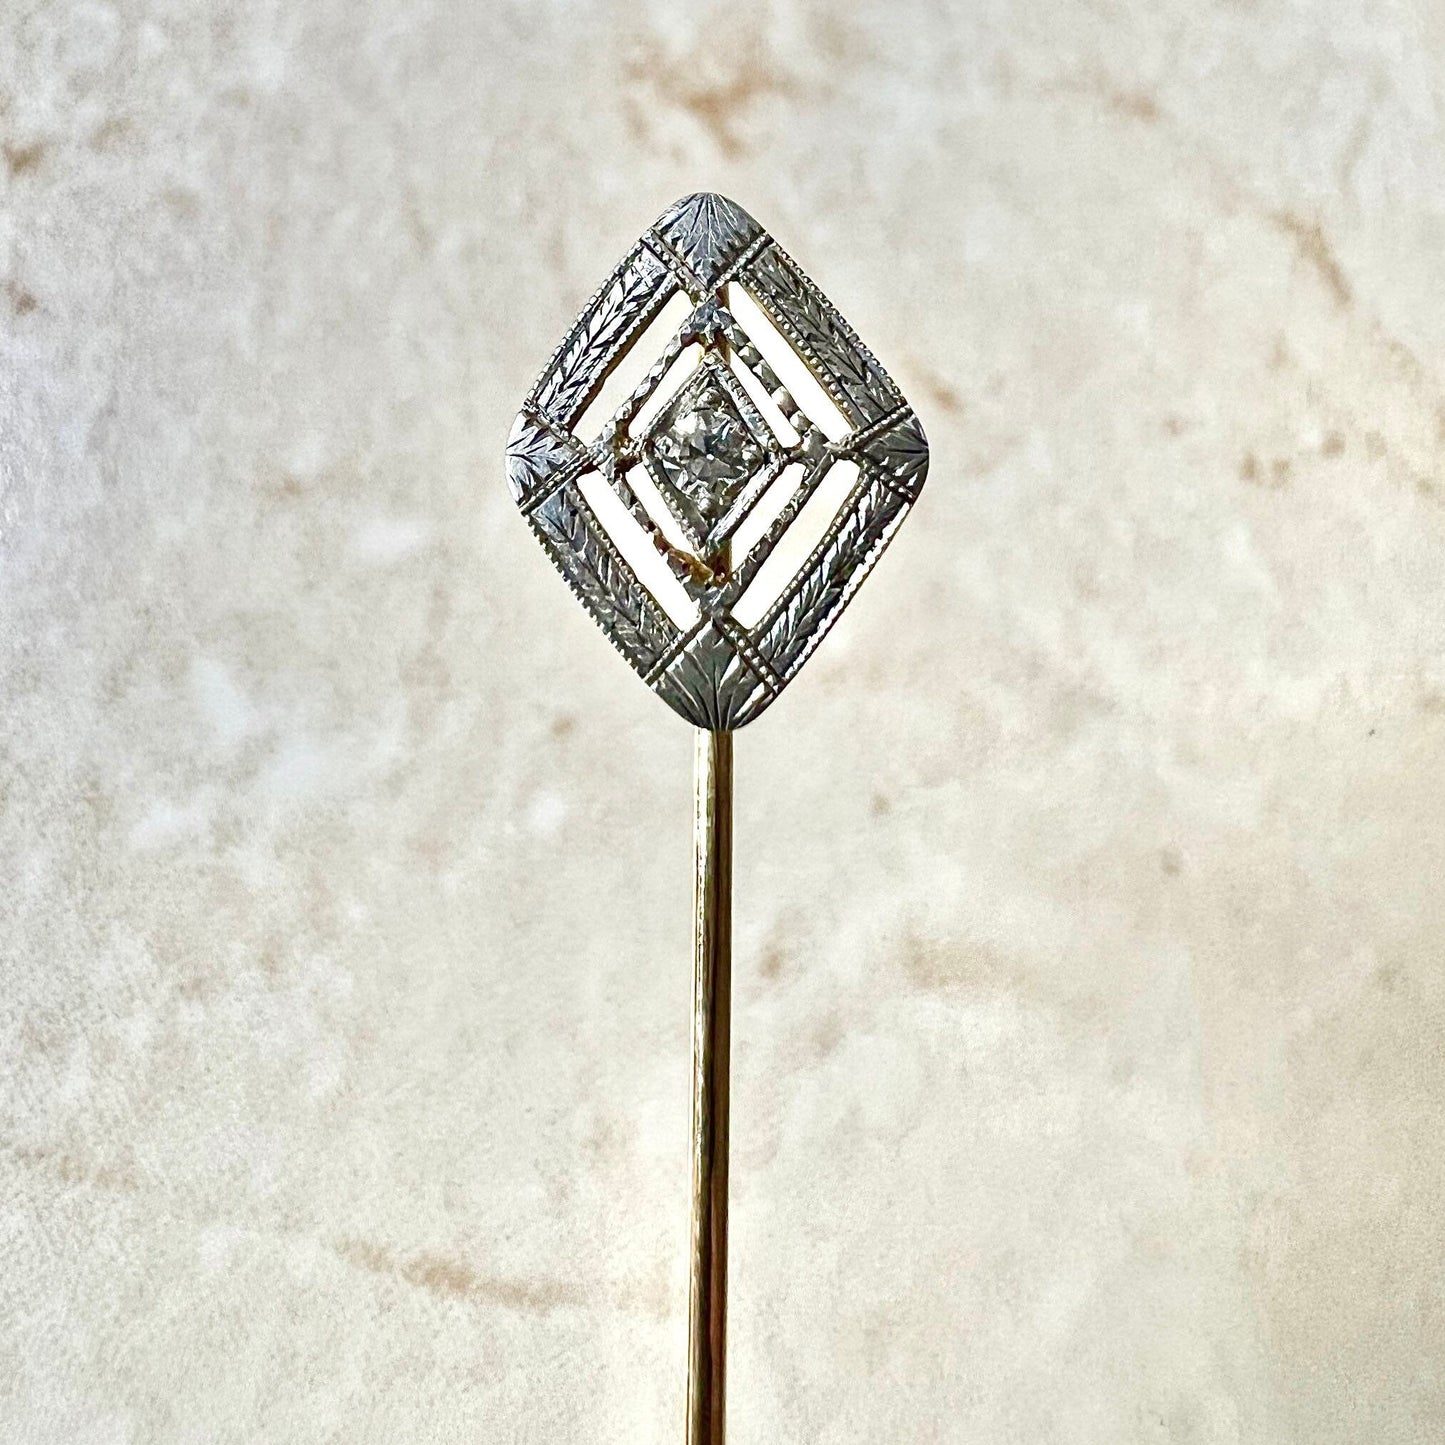 Antique Art Deco 14K Yellow Gold & Platinum Diamond Stick Pin -  Diamond Filigree Stick Pin - Antique Stick Pin -Diamond Solitaire Stick Pin